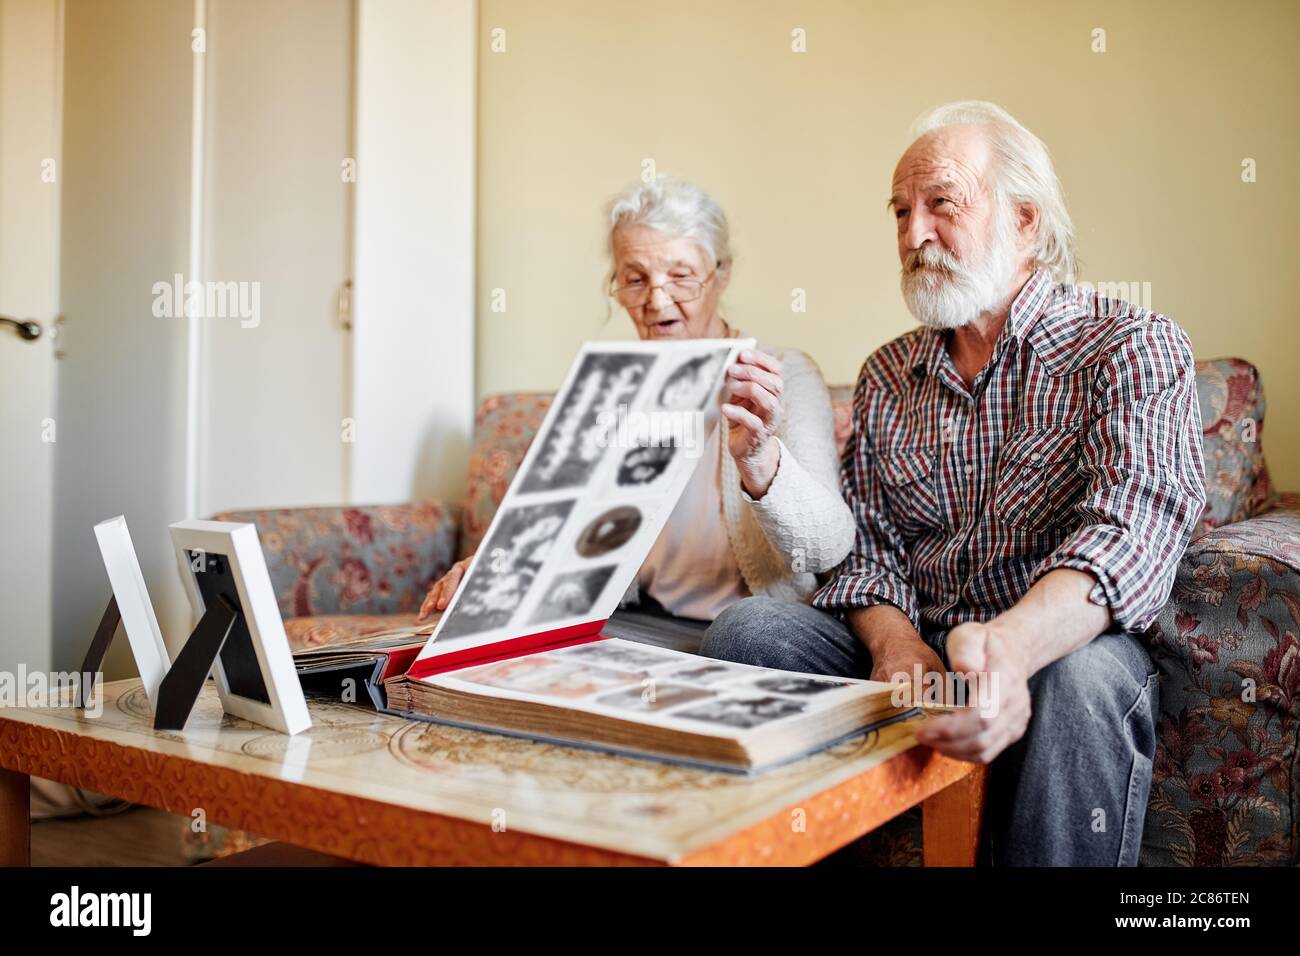 Coppia senior guardando un album fotografico di famiglia con foto d'epoca seduto sul divano in soggiorno con interni morbidi e accoglienti, la vecchia signora punta alle foto Foto Stock